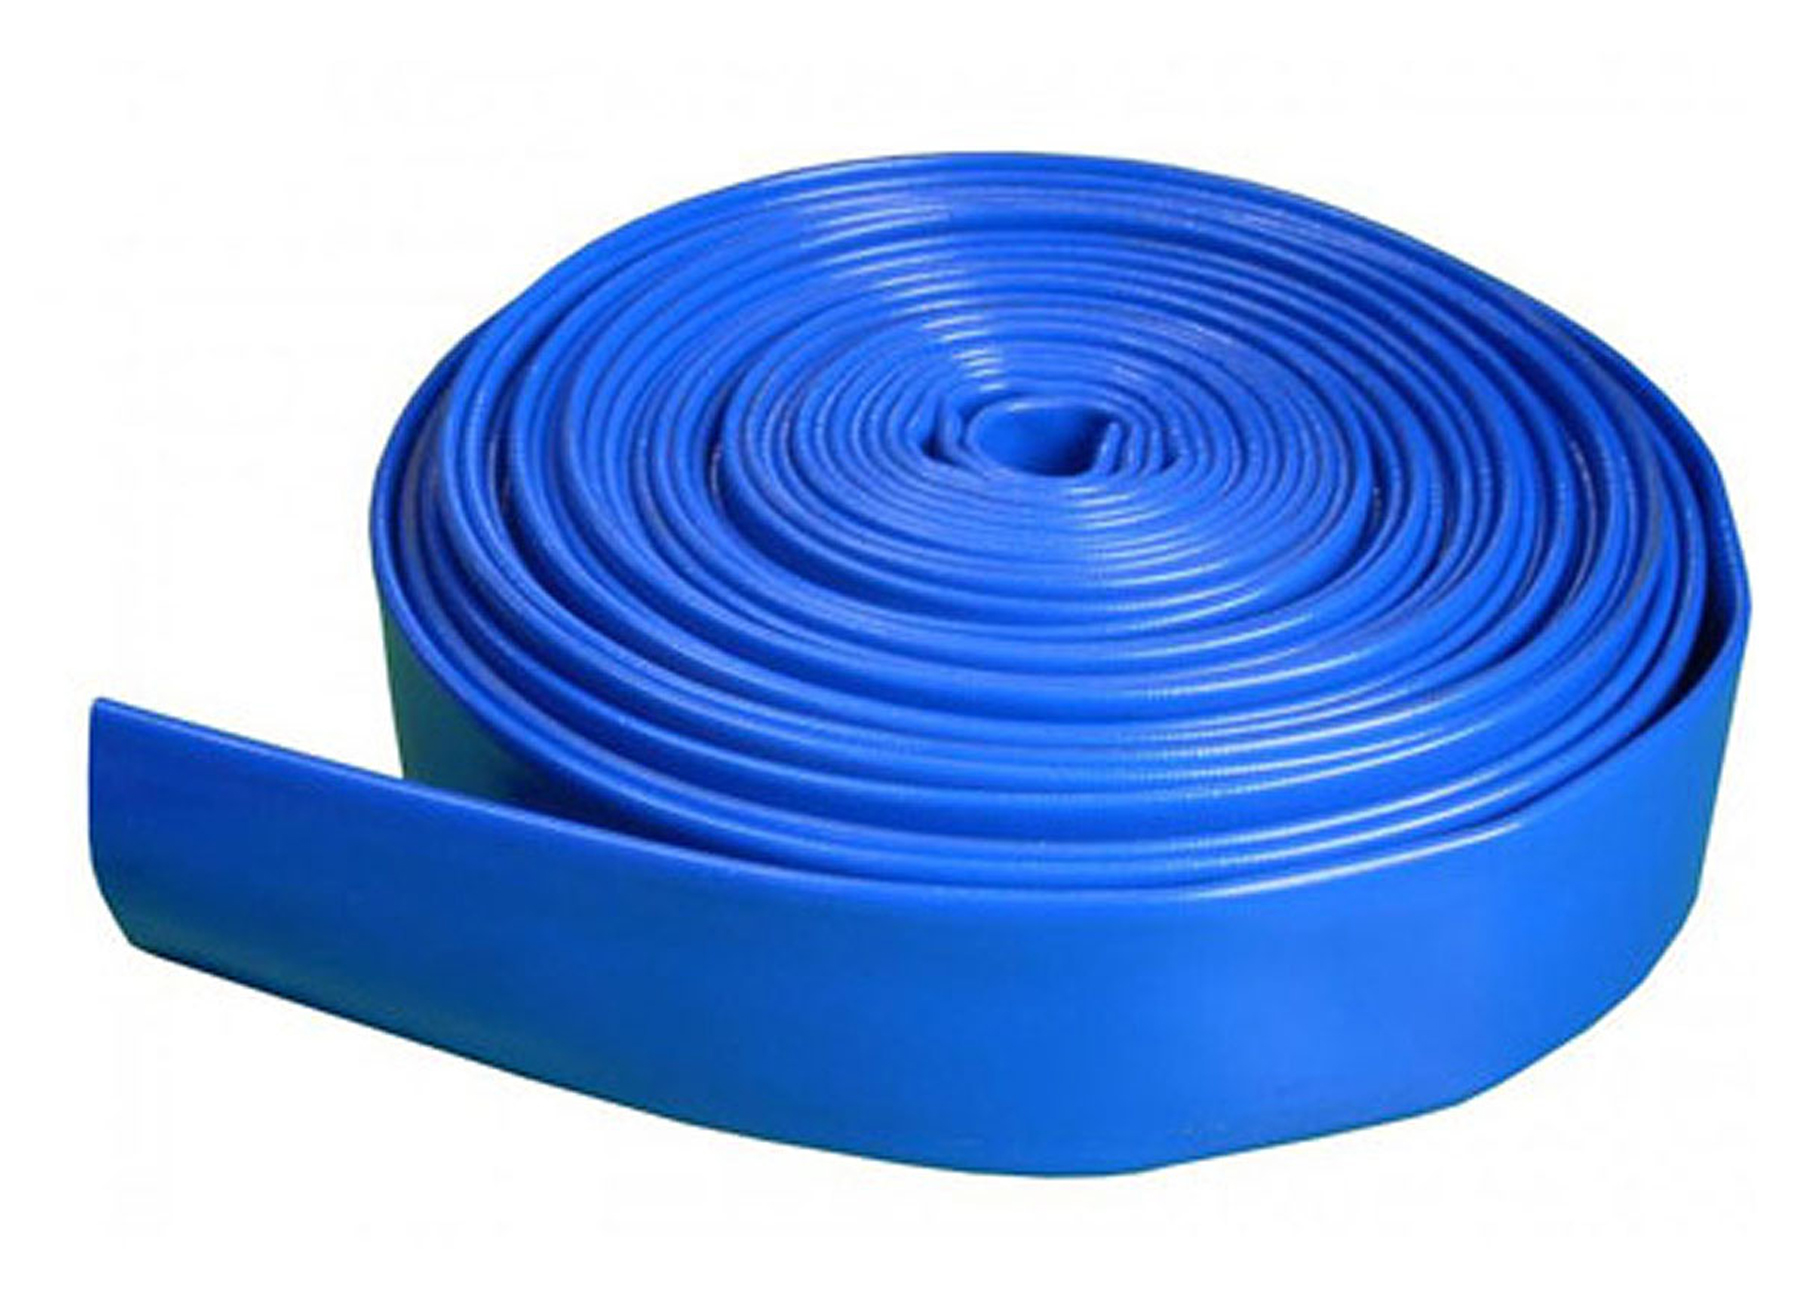 draadloos Aan boord Voorbereiding Brandweerslang Blauw - tuin - besproeien vernevelen - technische slangen -  brandweerslang blauw